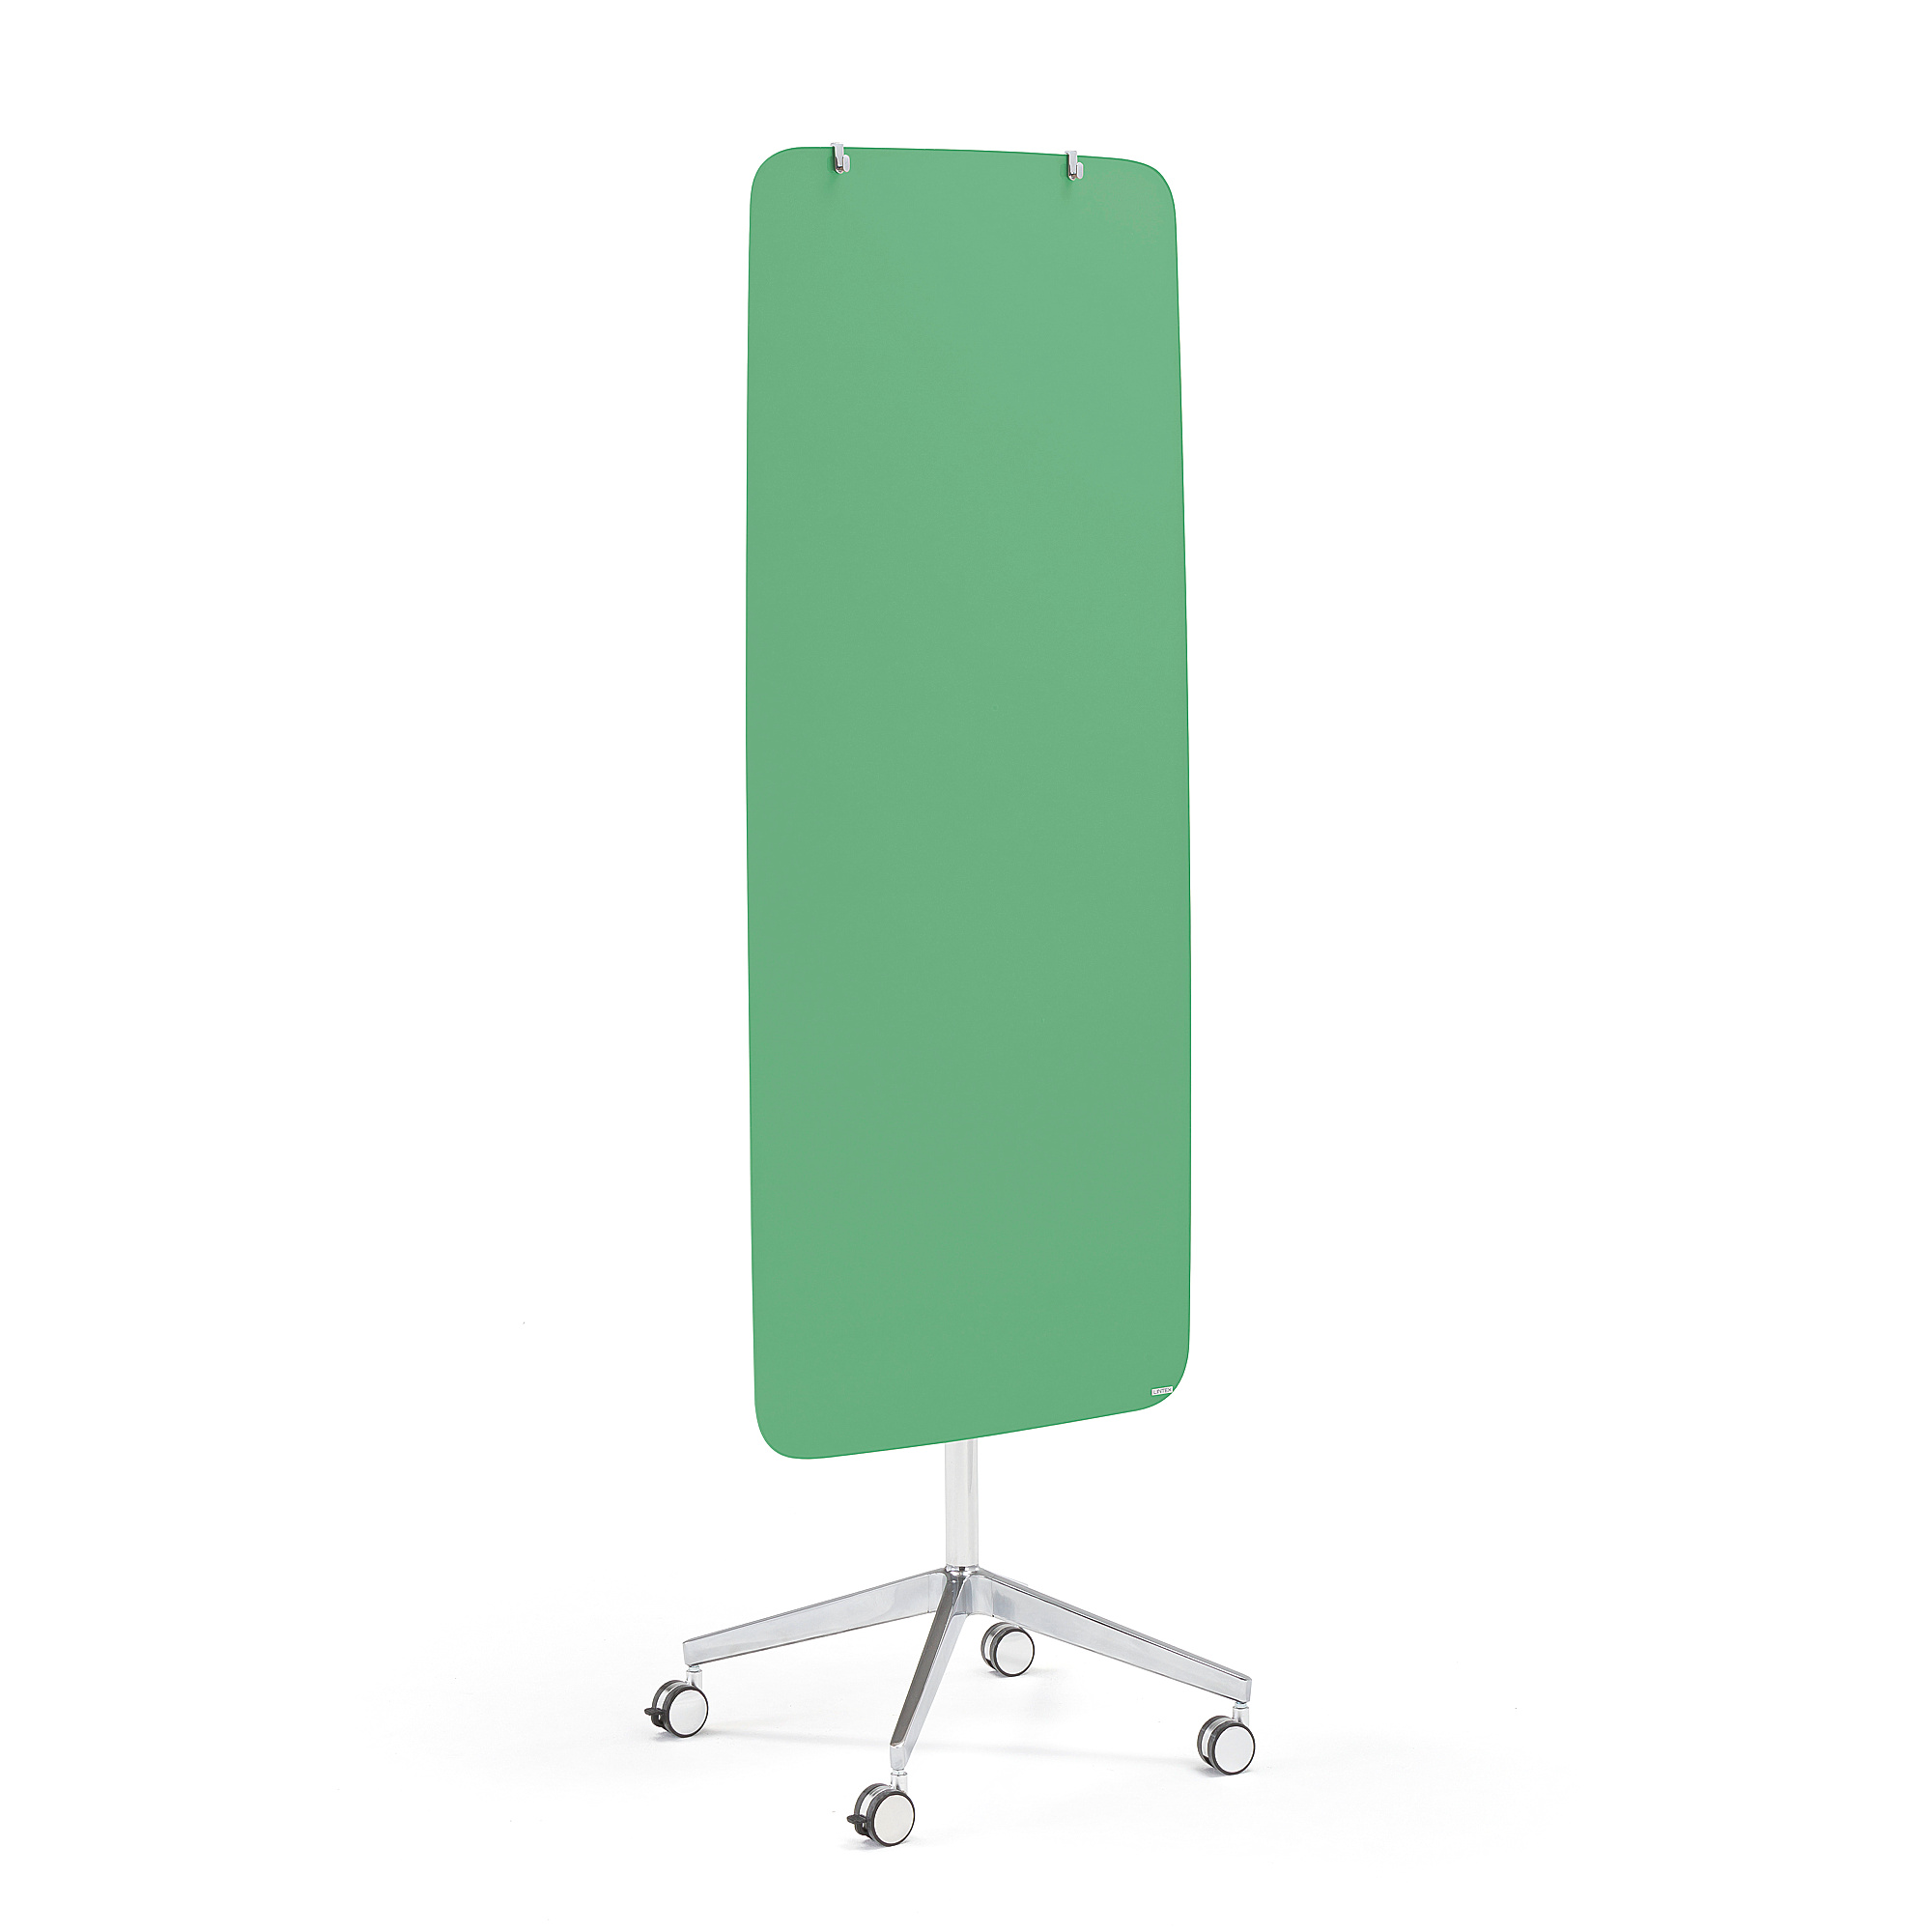 Mobilní skleněná tabule STELLA, magnetická, kulaté rohy, zelená